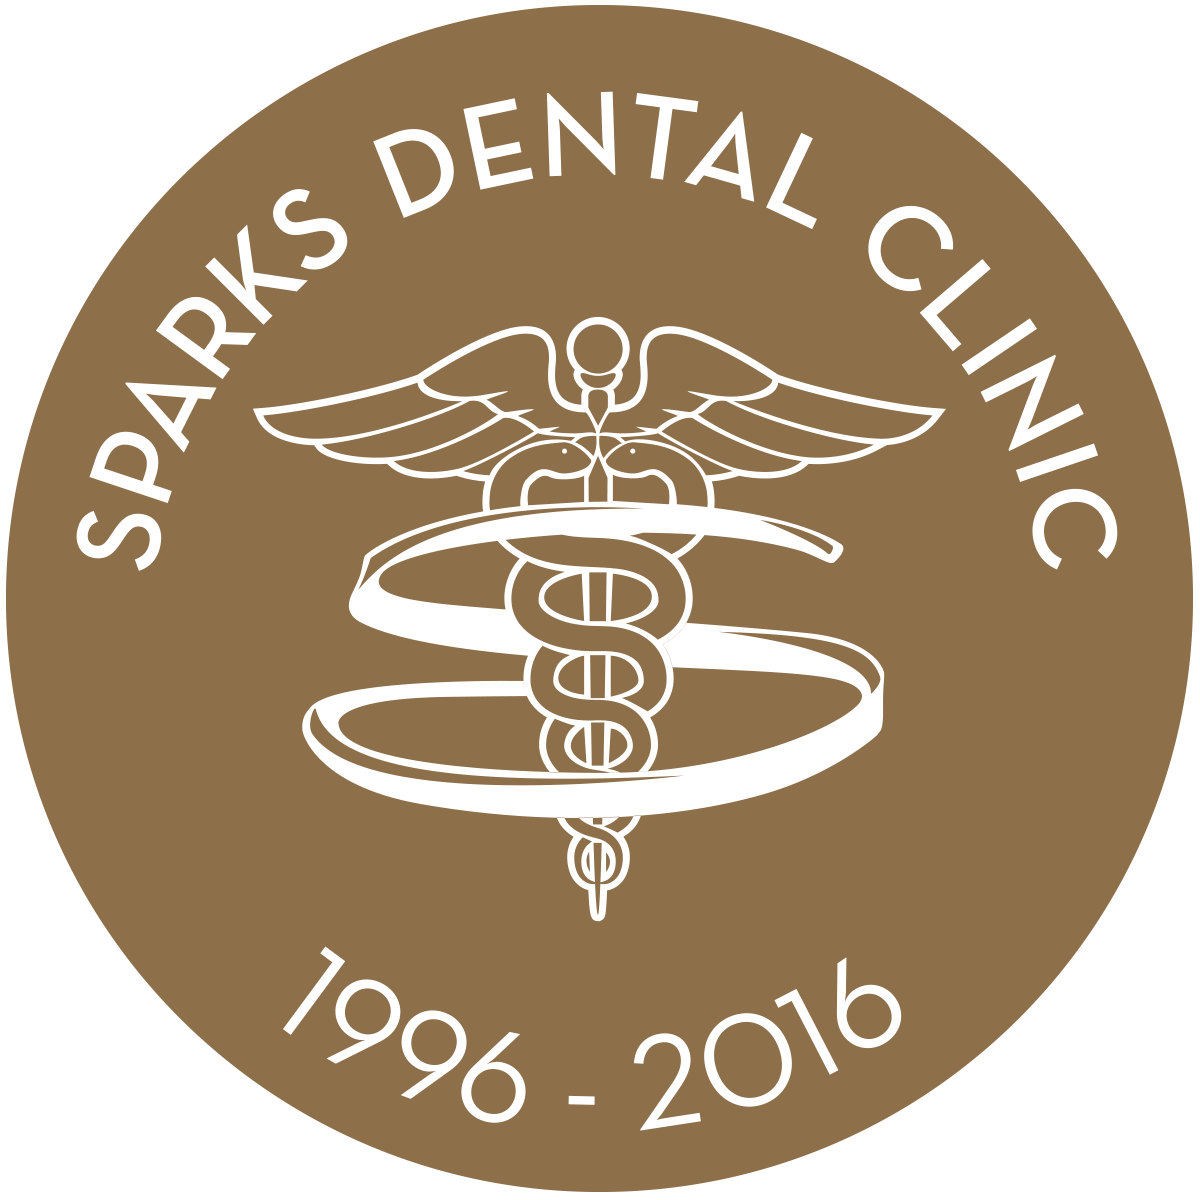 Sparks Dental